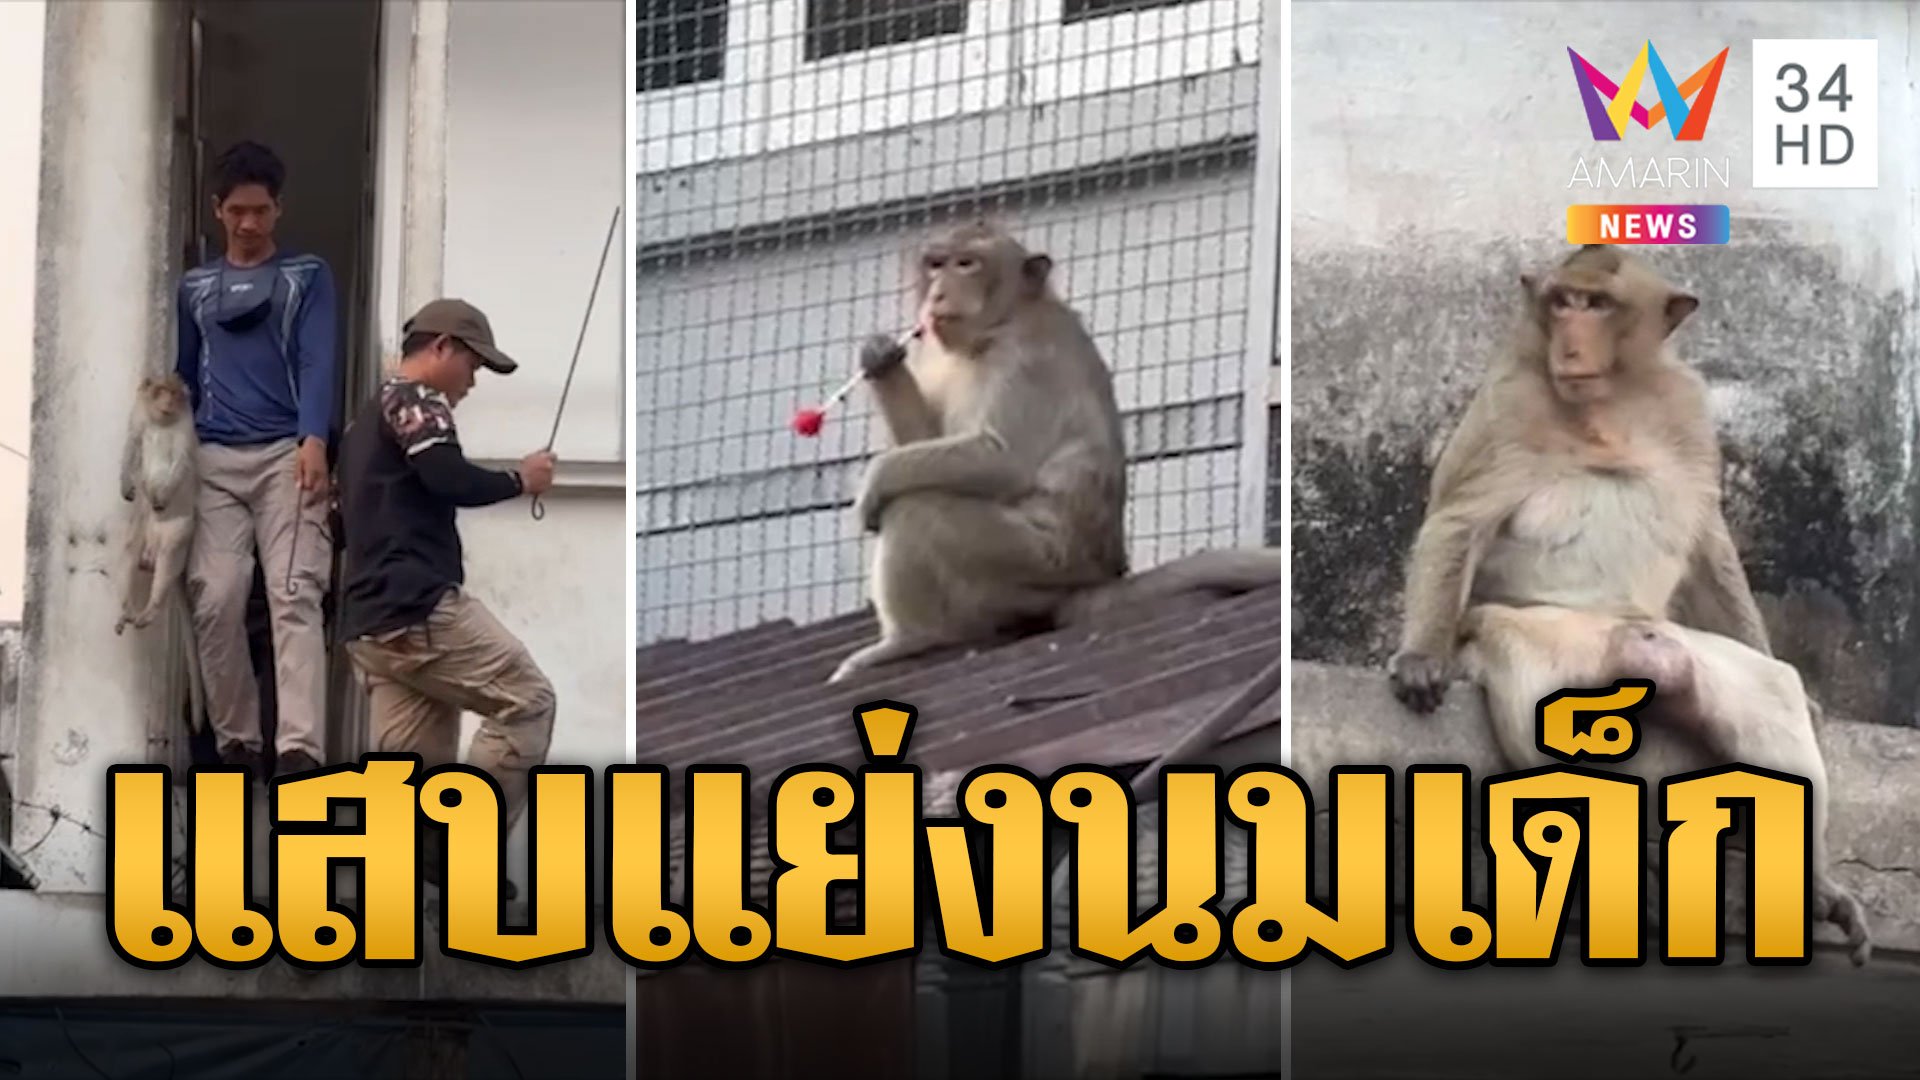 ปฏิบัติการจับ 'ไอ้แสบ' ลิงห้าวแย่งขวดนมเด็ก | ข่าวเที่ยงอมรินทร์ | 3 เม.ย. 67 | AMARIN TVHD34